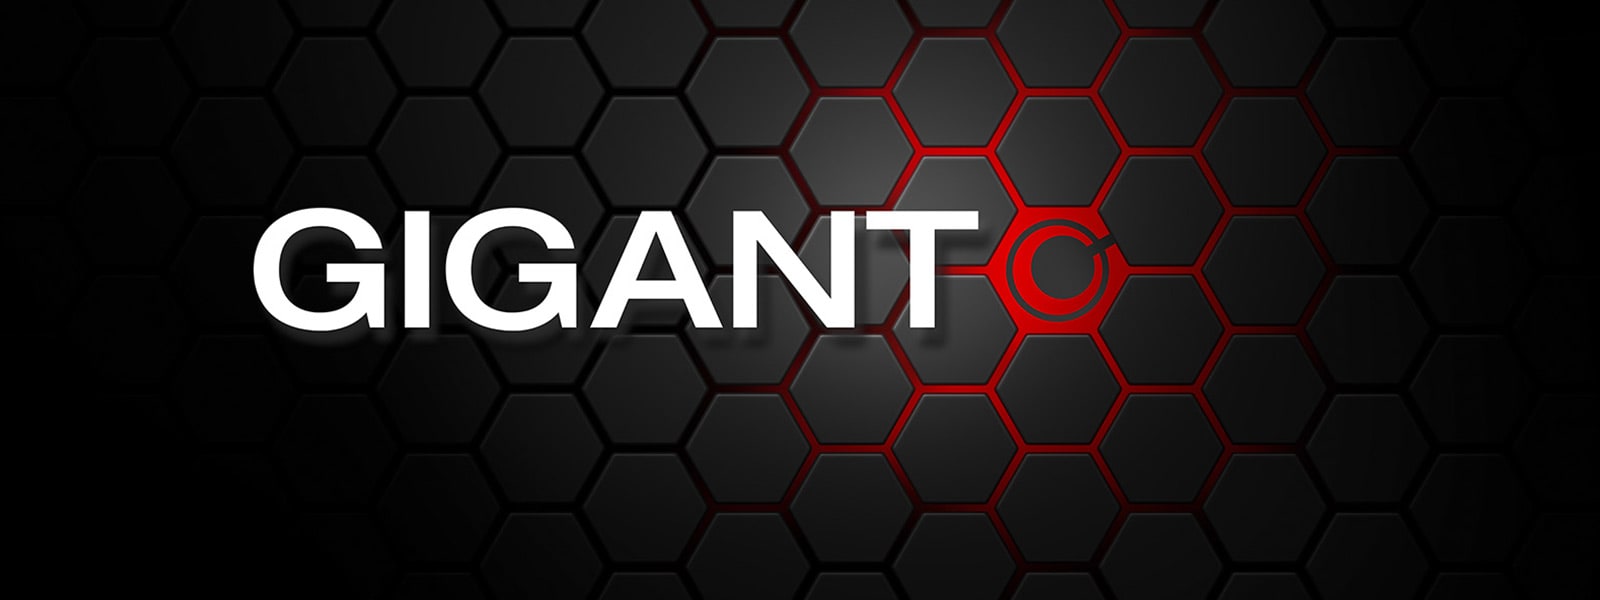 Neues Logo und Corporate Design bei GIGANT